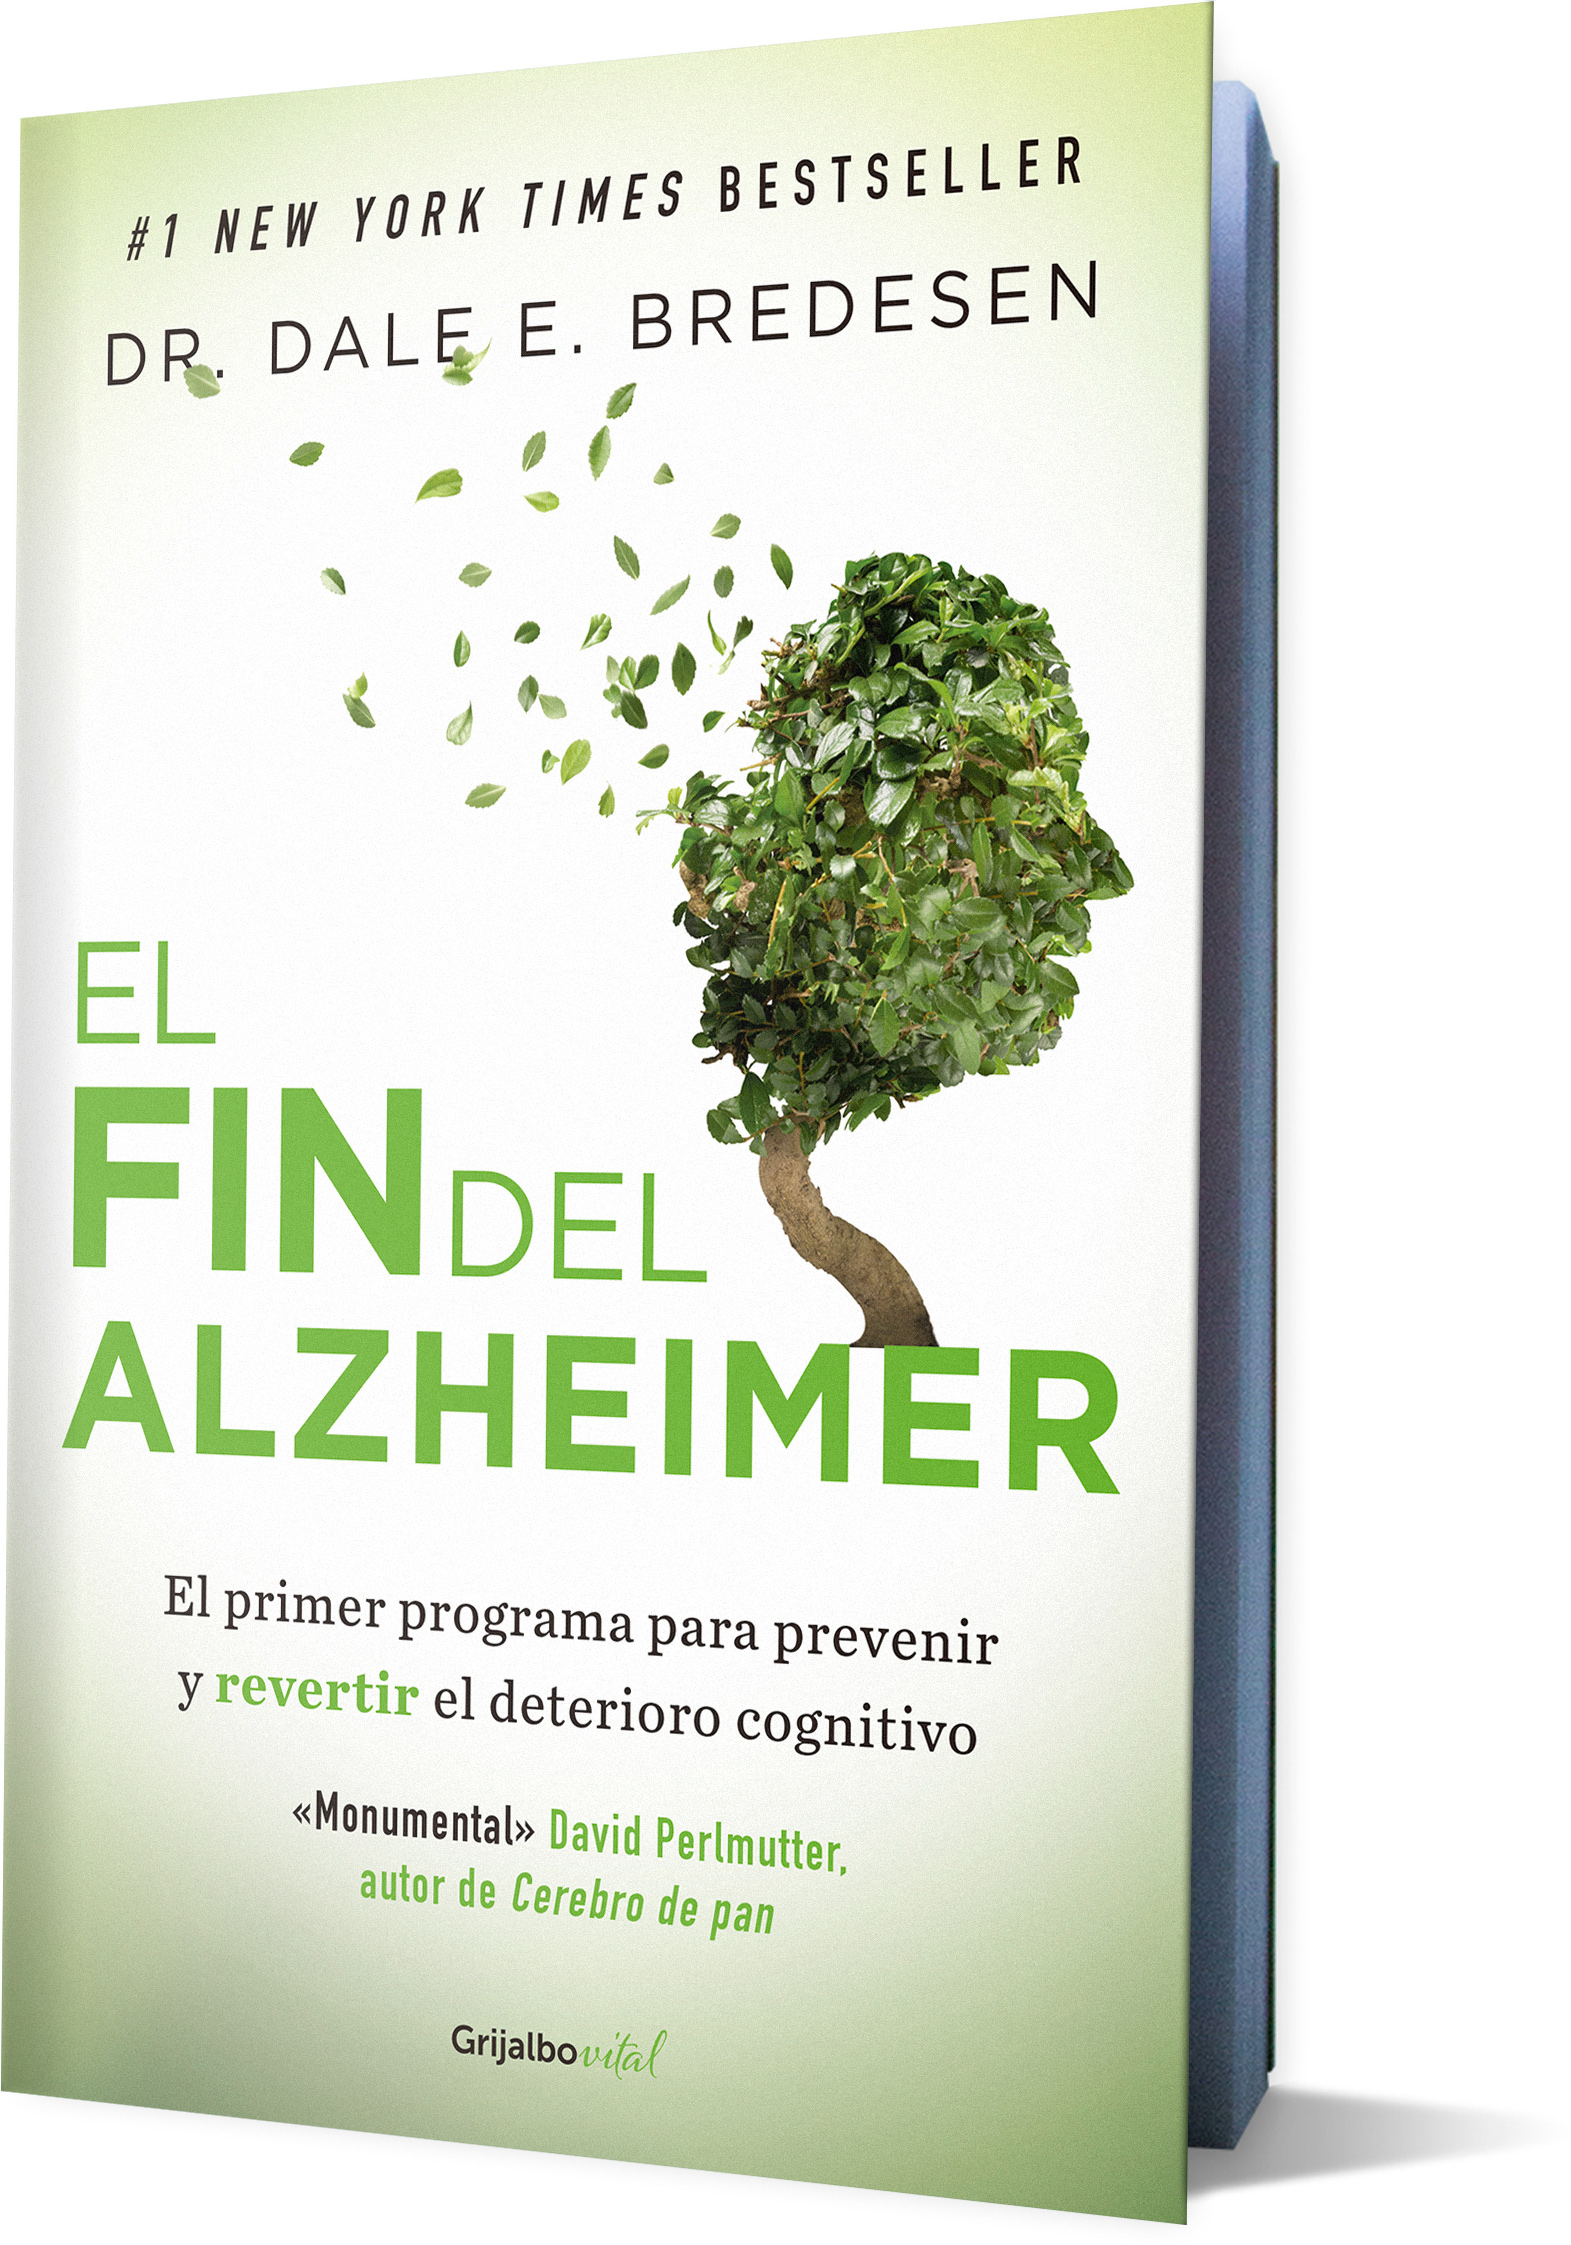 El fin del alzheimer